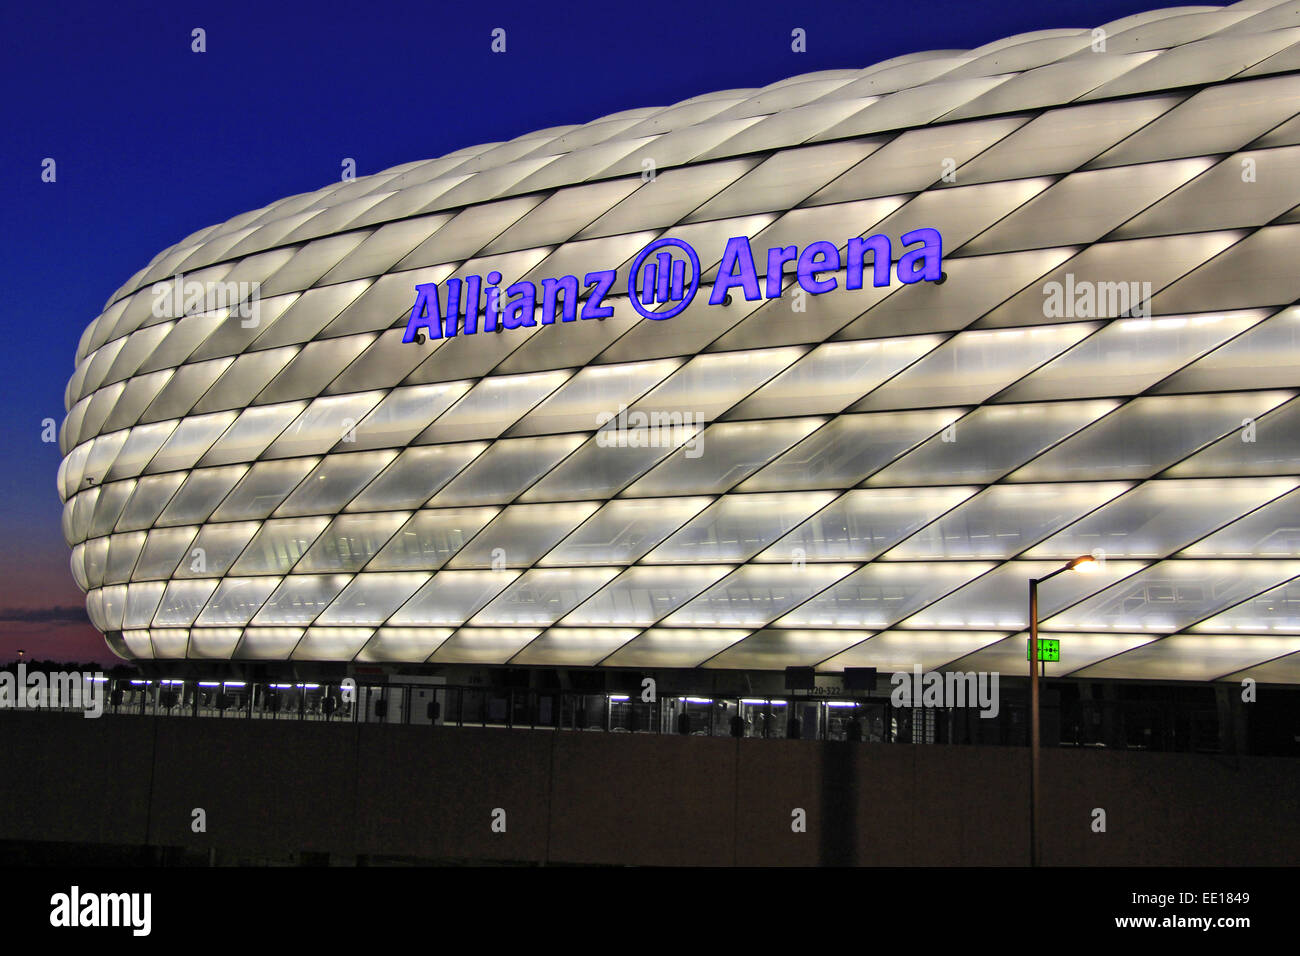 Deutschland, München, Fussballstadion, Allianz Arena, Erbaut 2002-2005, Architekten, Herzog Und de Meuron, Covertex Aussenhüll Stockfoto